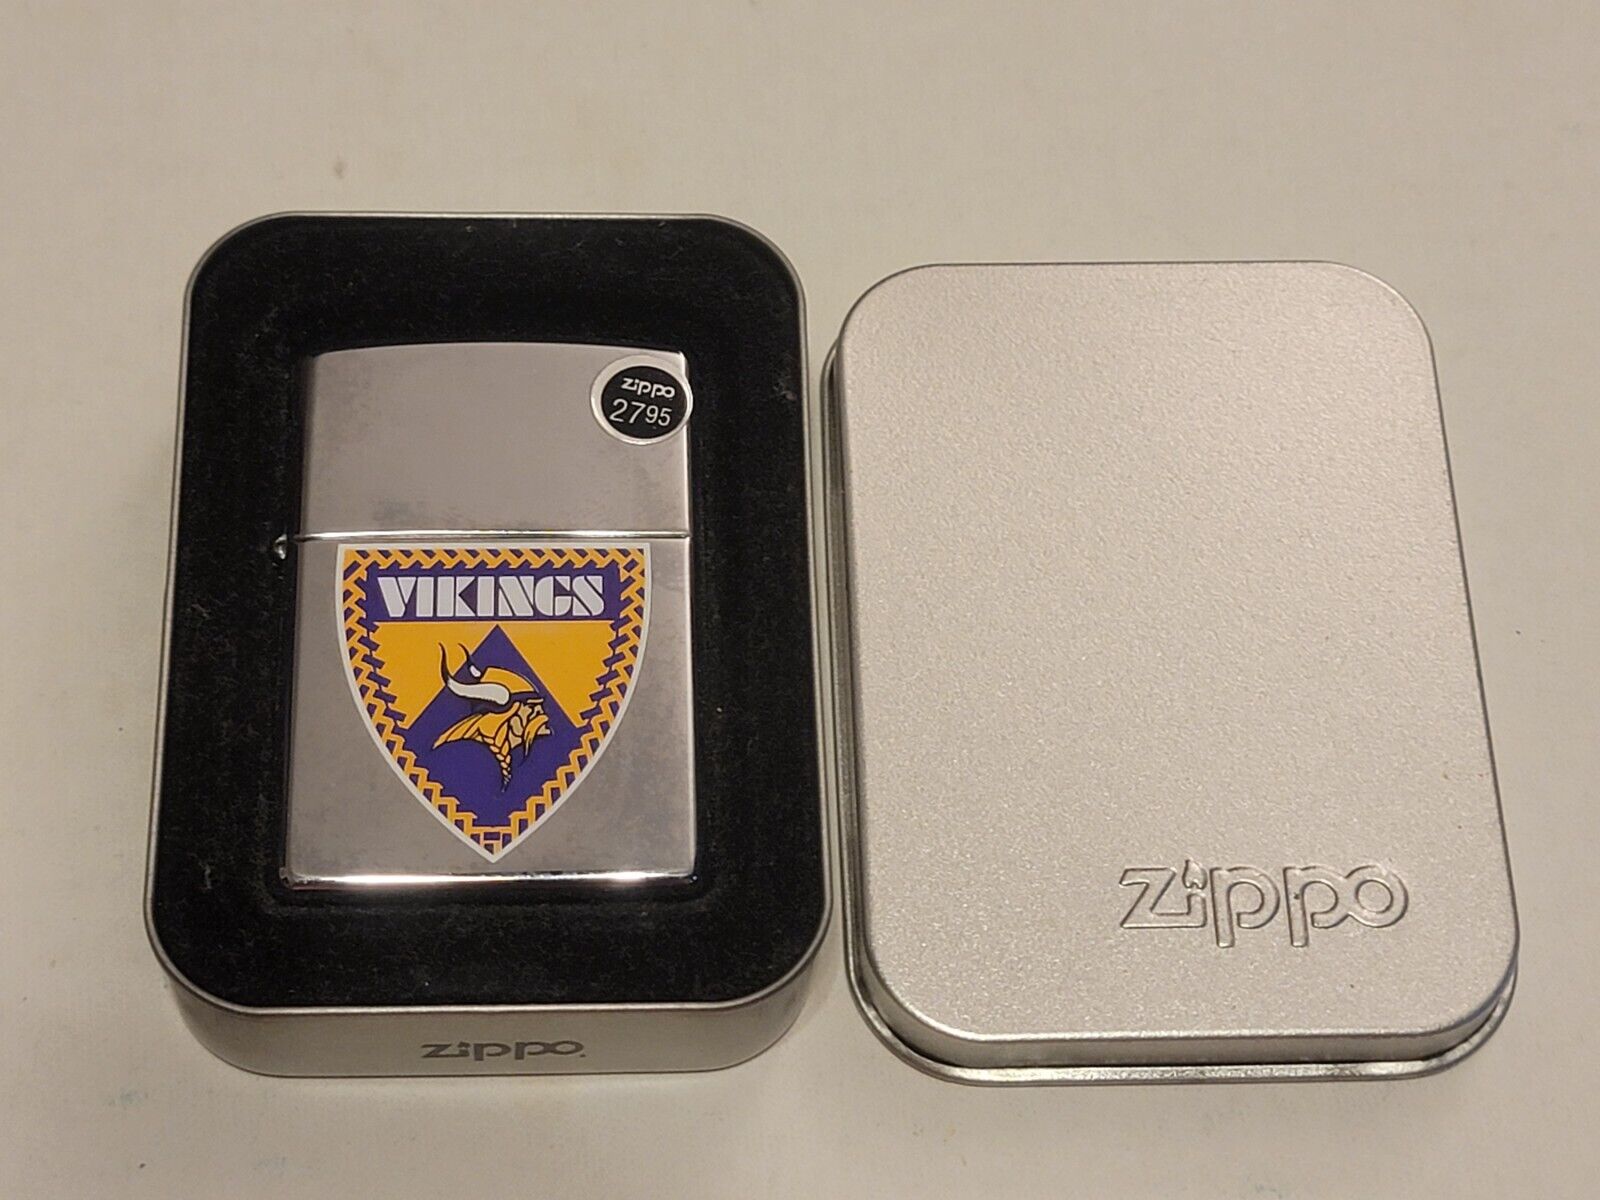 2005 Minnesota Vikings Zippo Lighter - Brand New